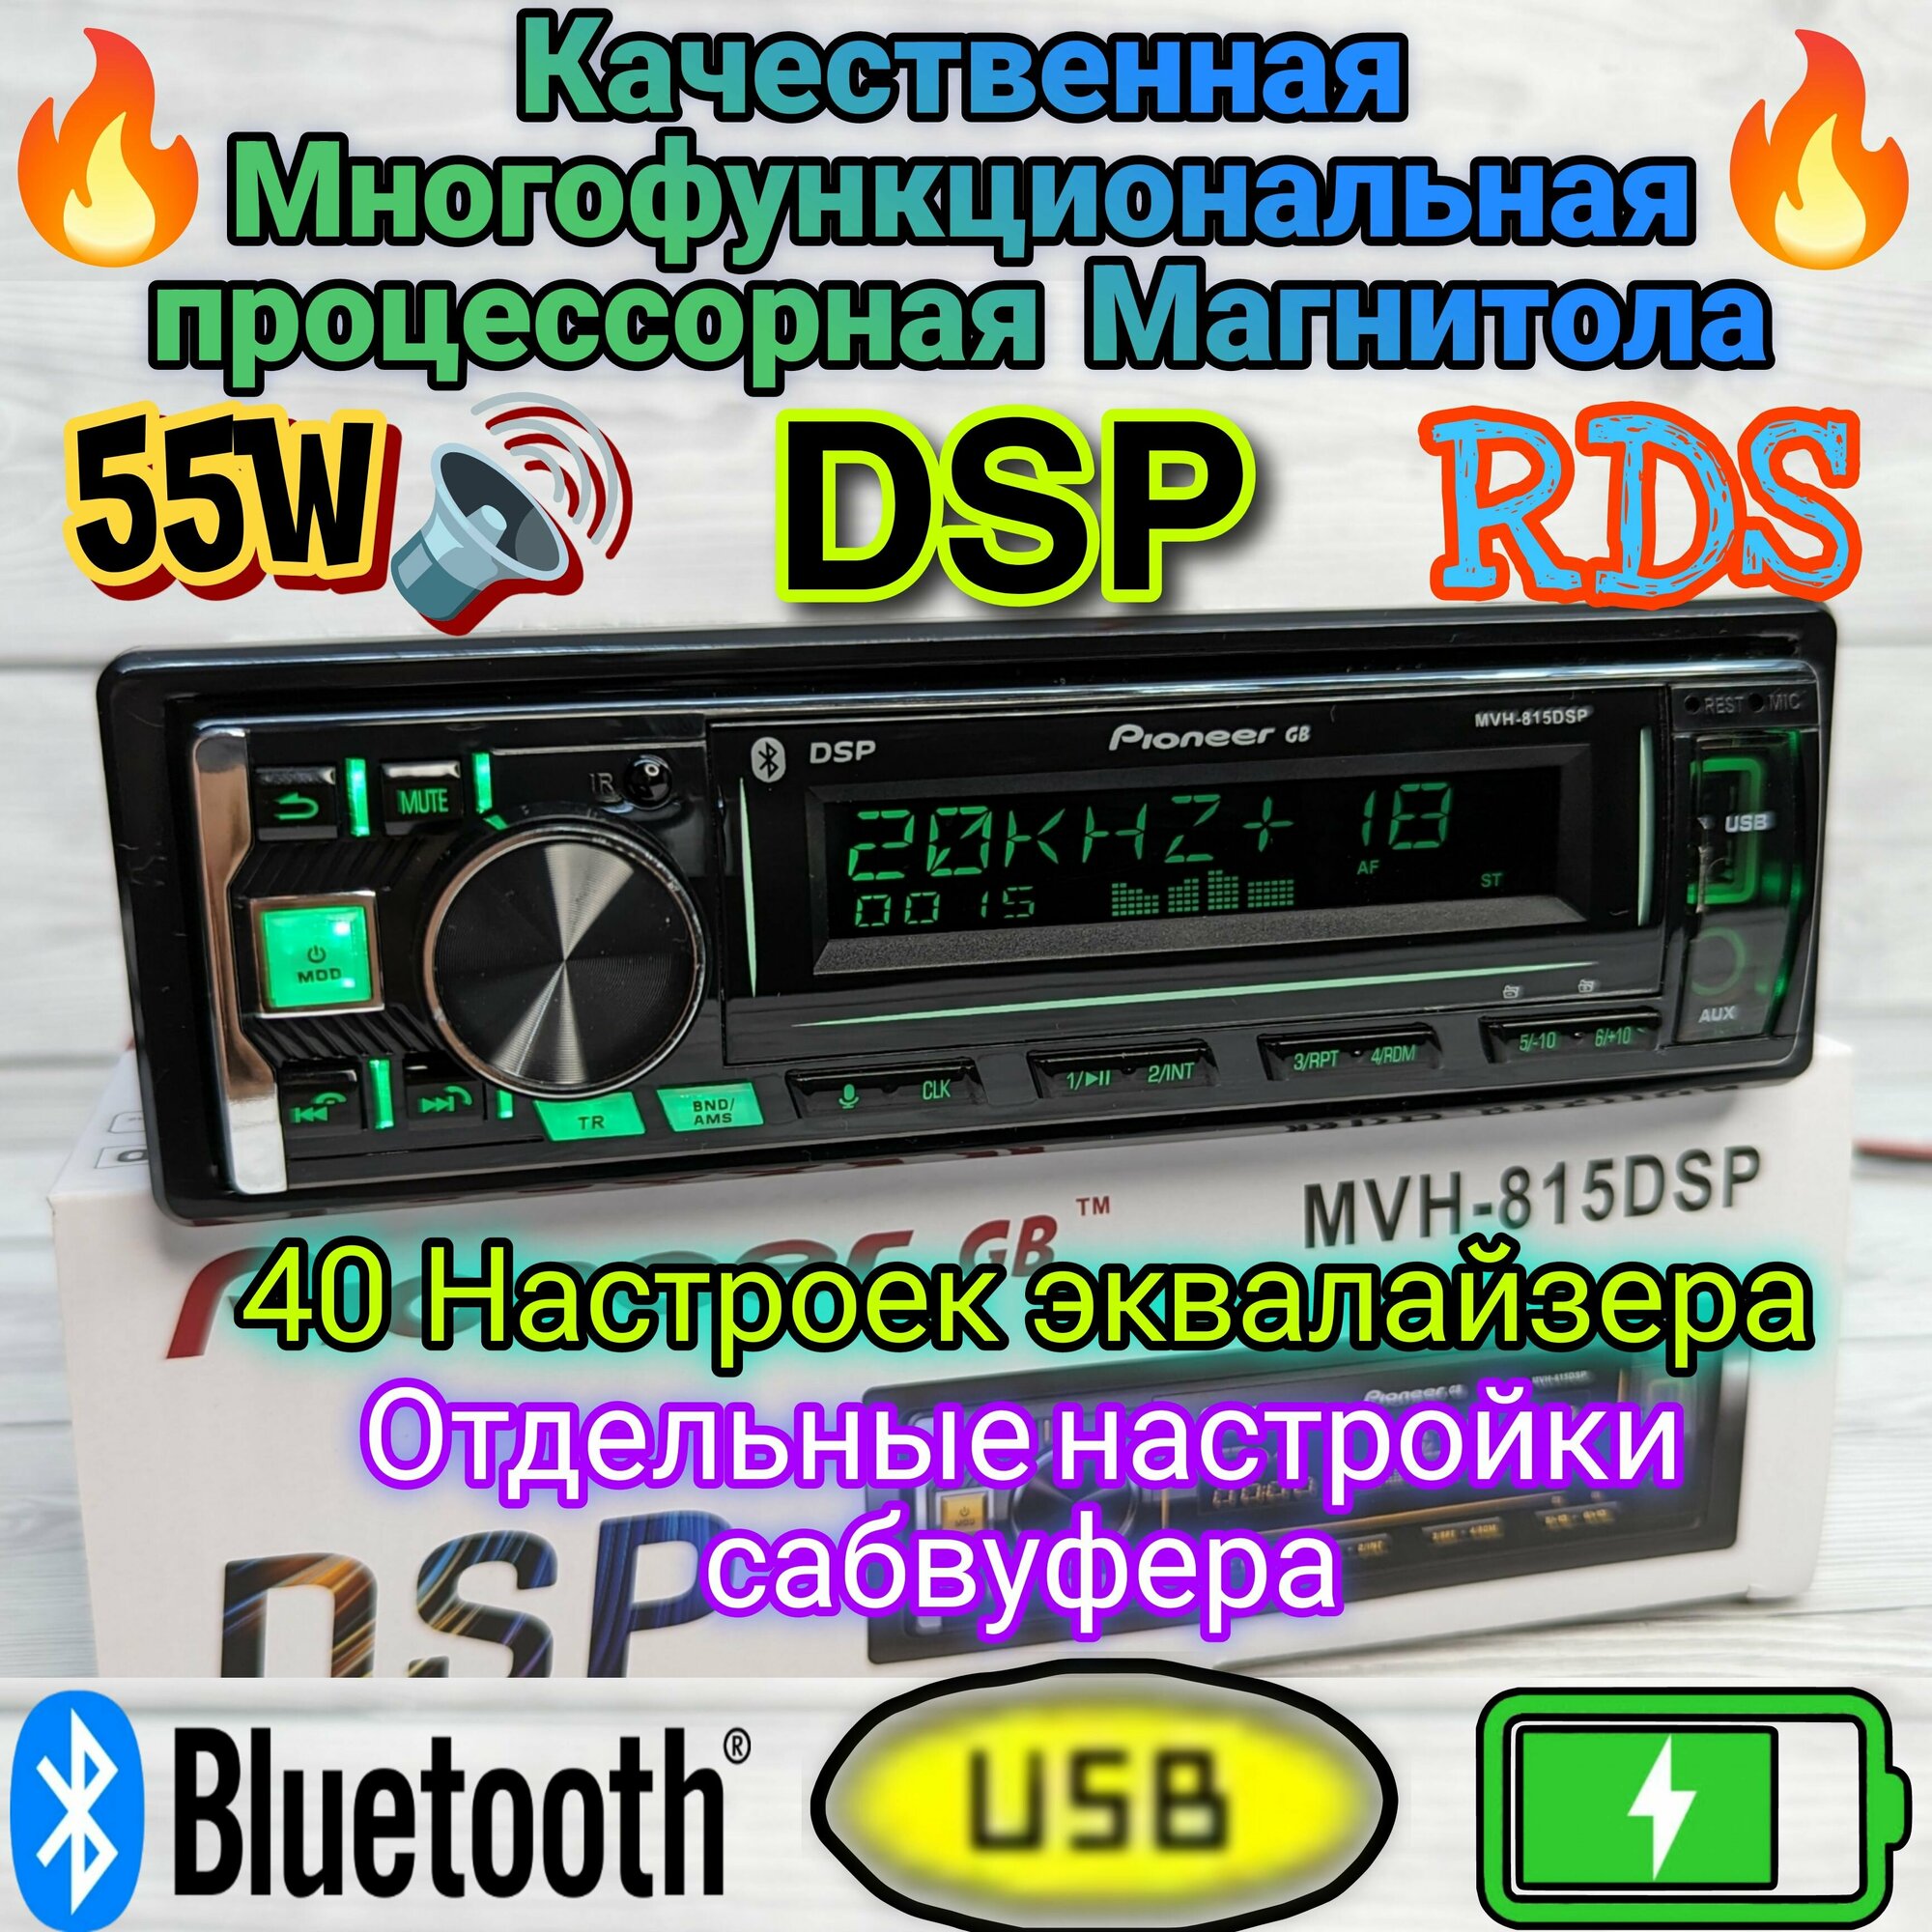 Магнитола с DSP Процессором, 40 настроек эквалайзера, Bluetooth, AUX, USB, громкая связь